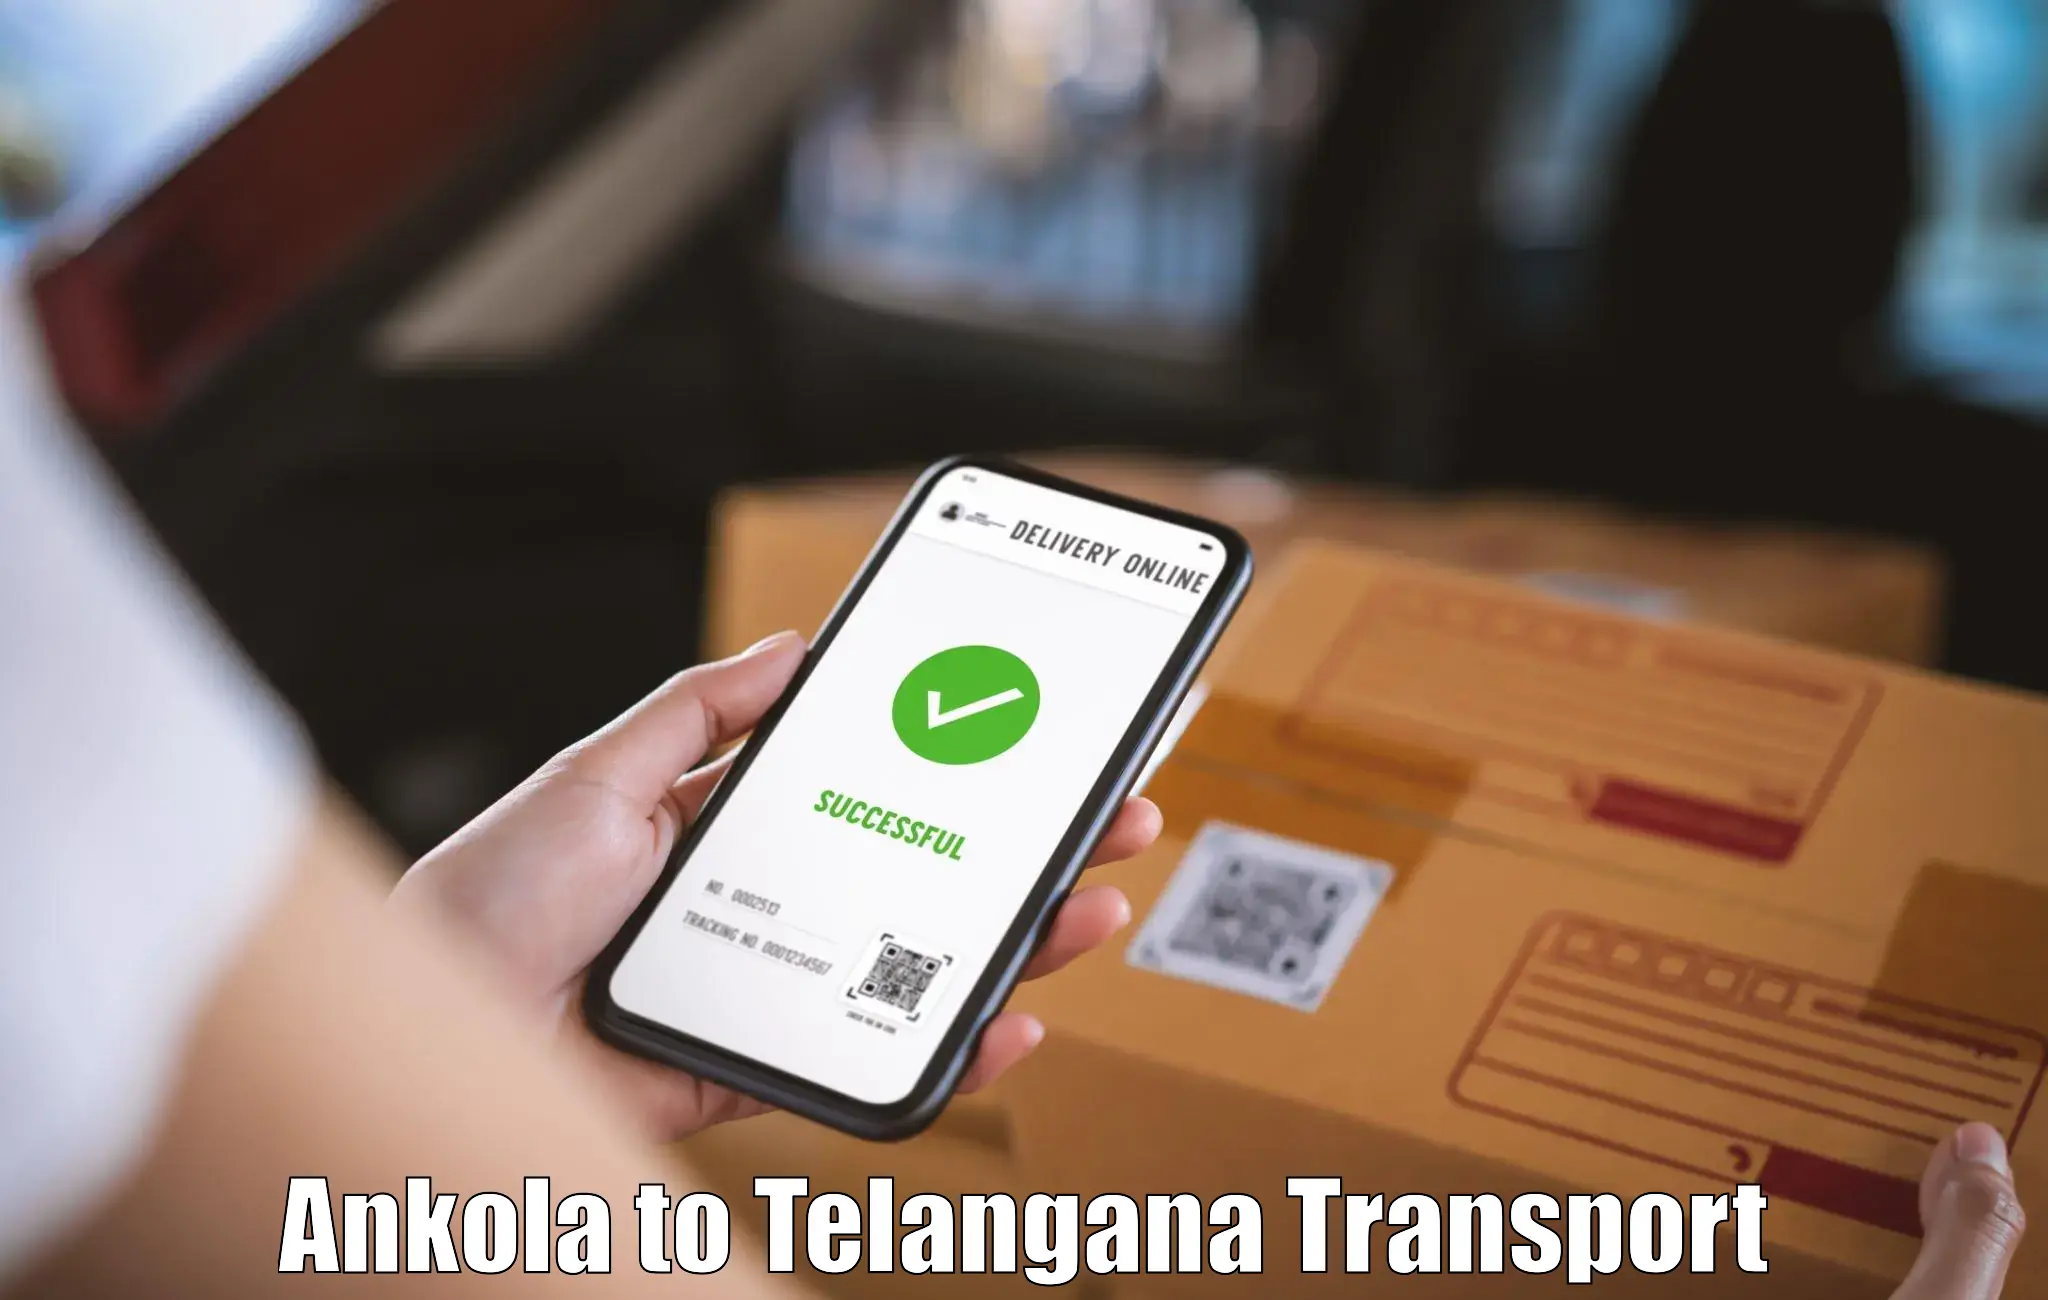 Transport services Ankola to Kalwakurthy